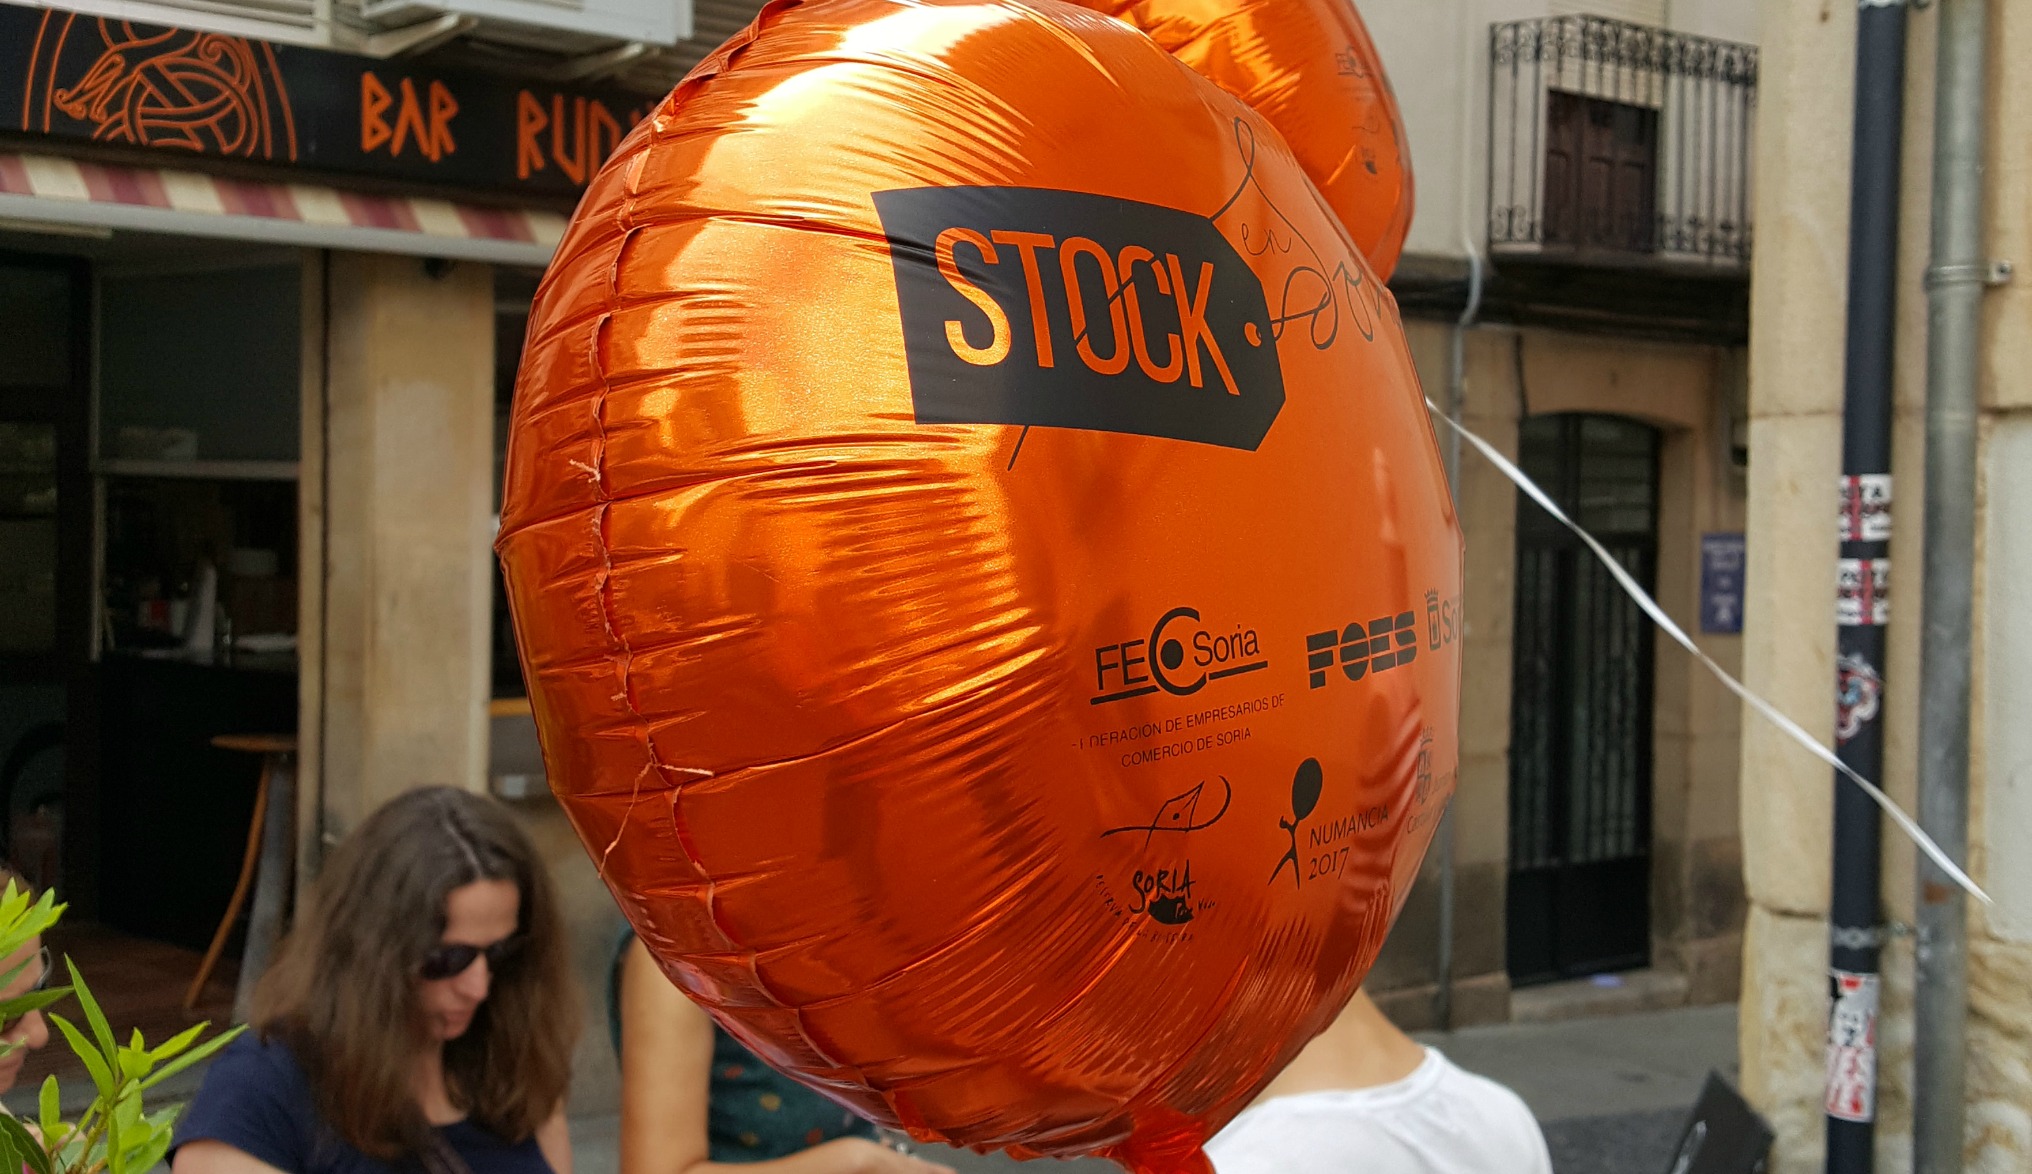 La Feria Stock en Soria se cierra con valoraciones sobresalientes de ventas, público y comerciantes